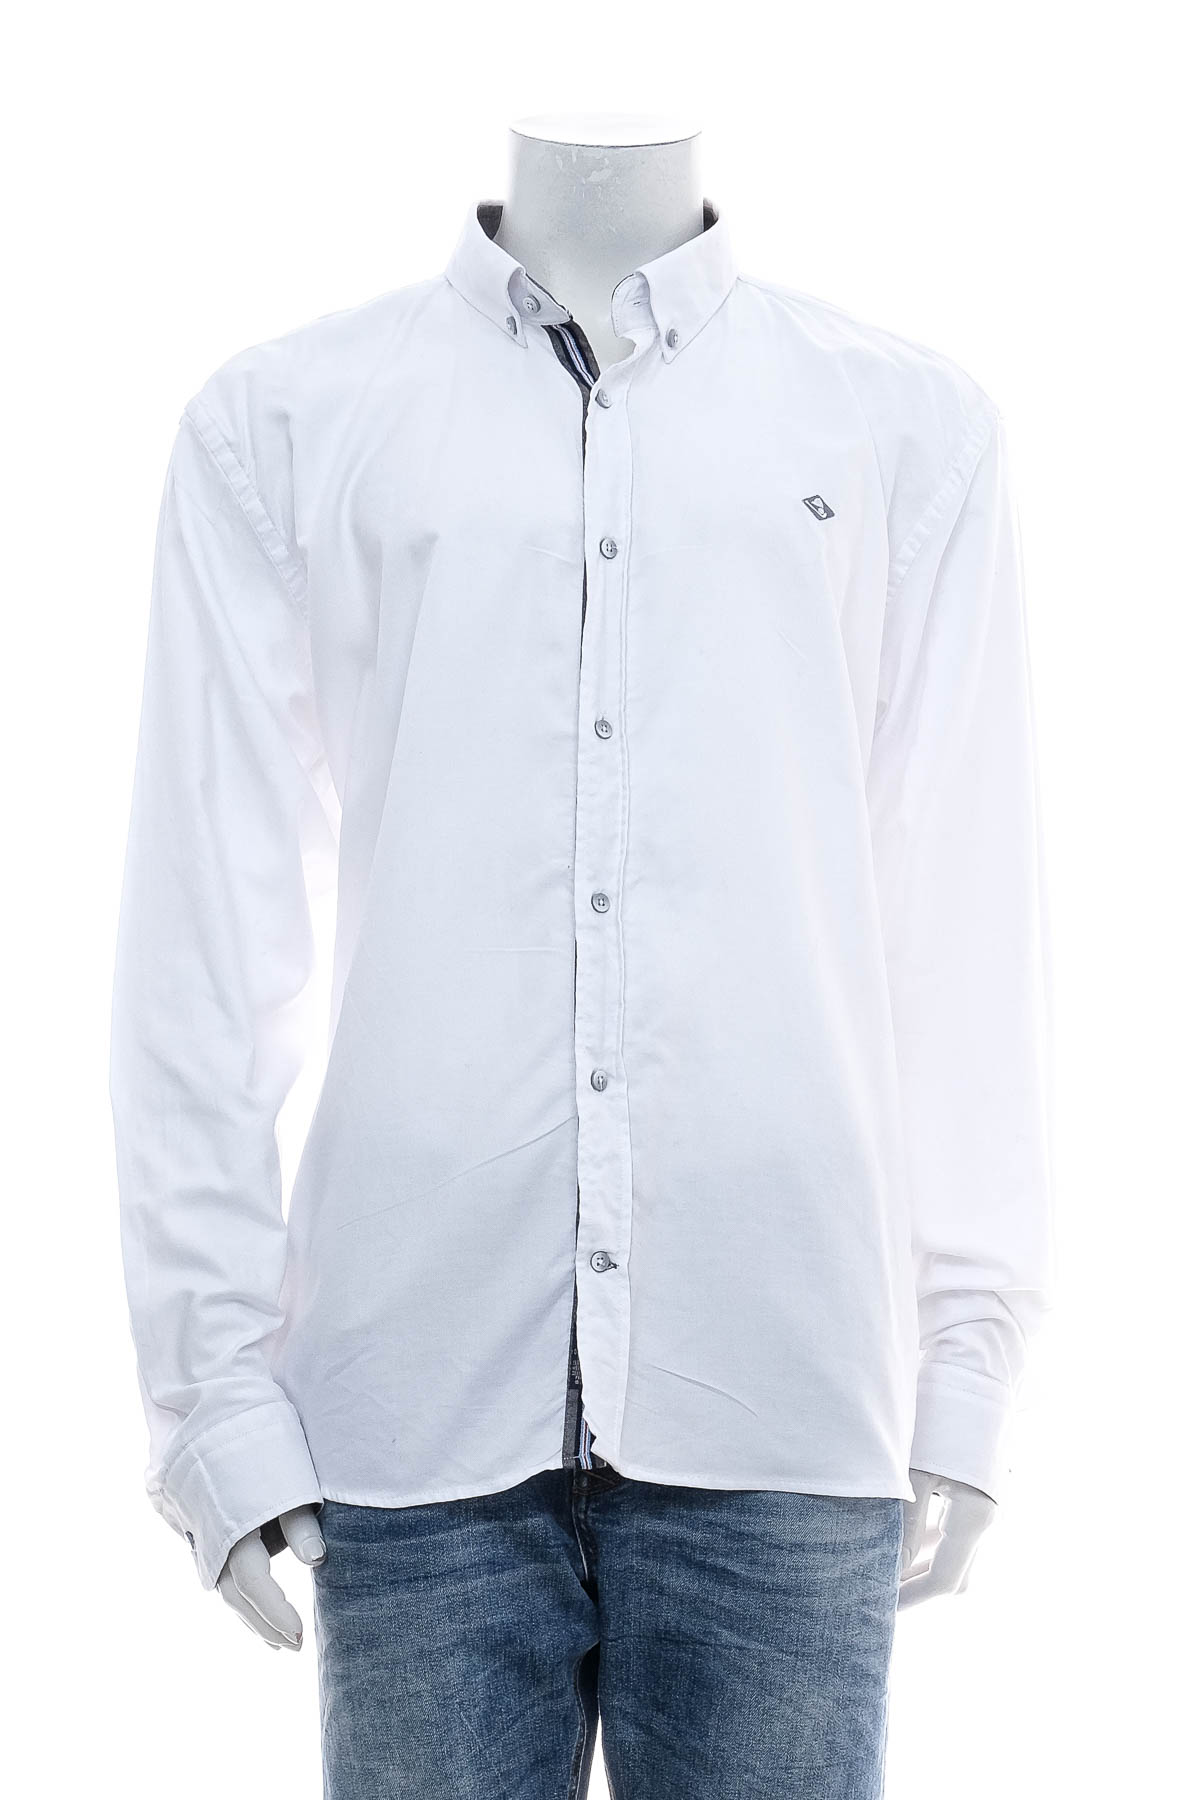 Ανδρικό πουκάμισο - SRT Sir Raymond Tailor - 0